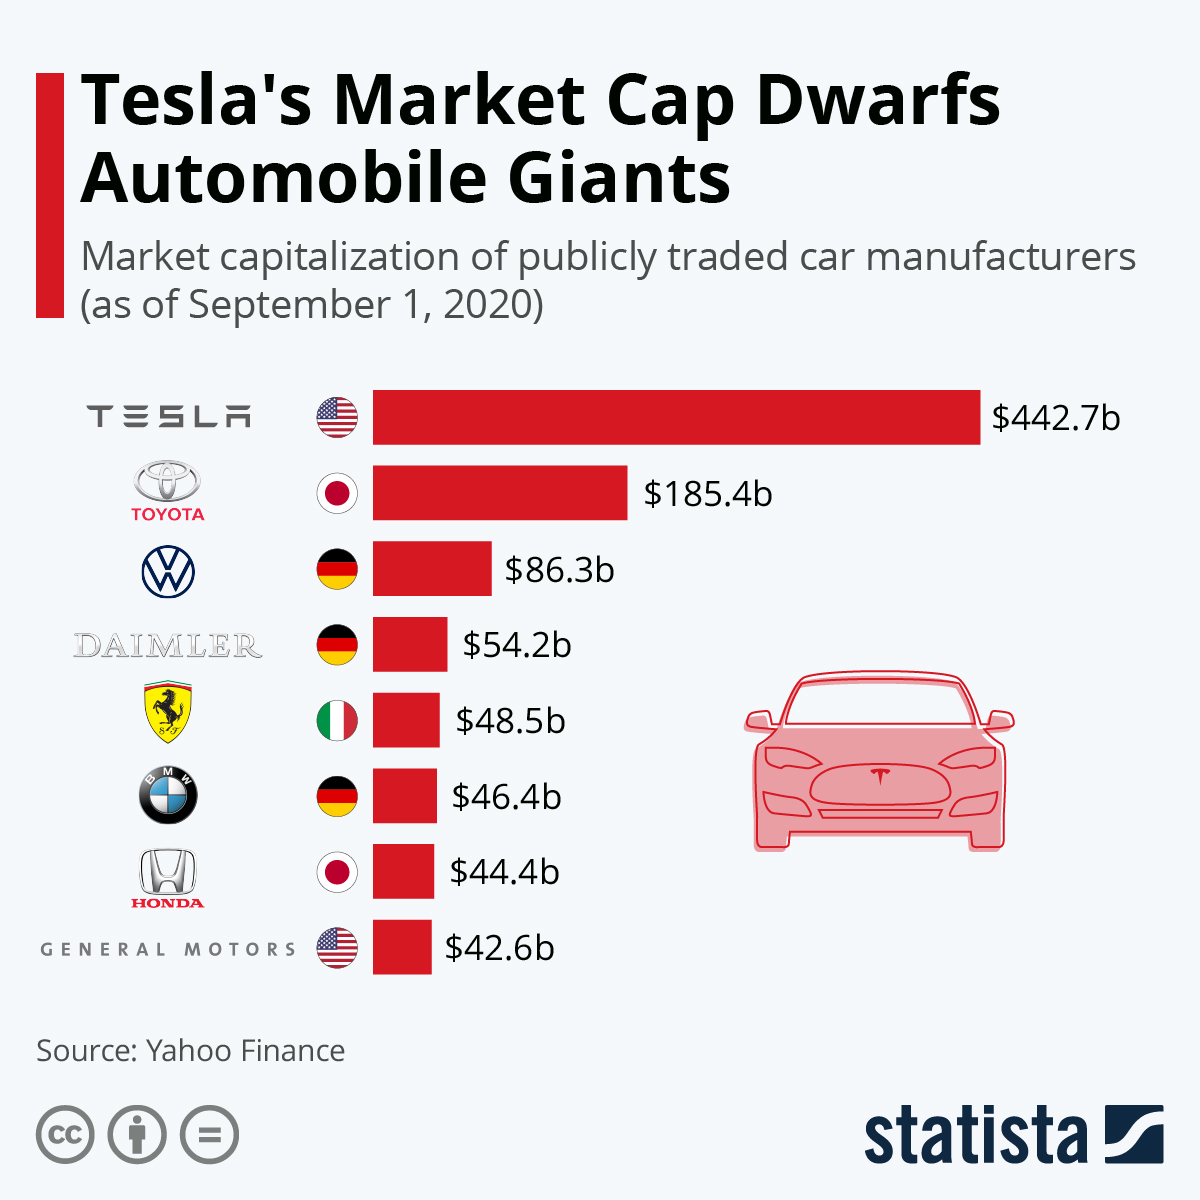 Tesla's market cap dwarfs automobile giants